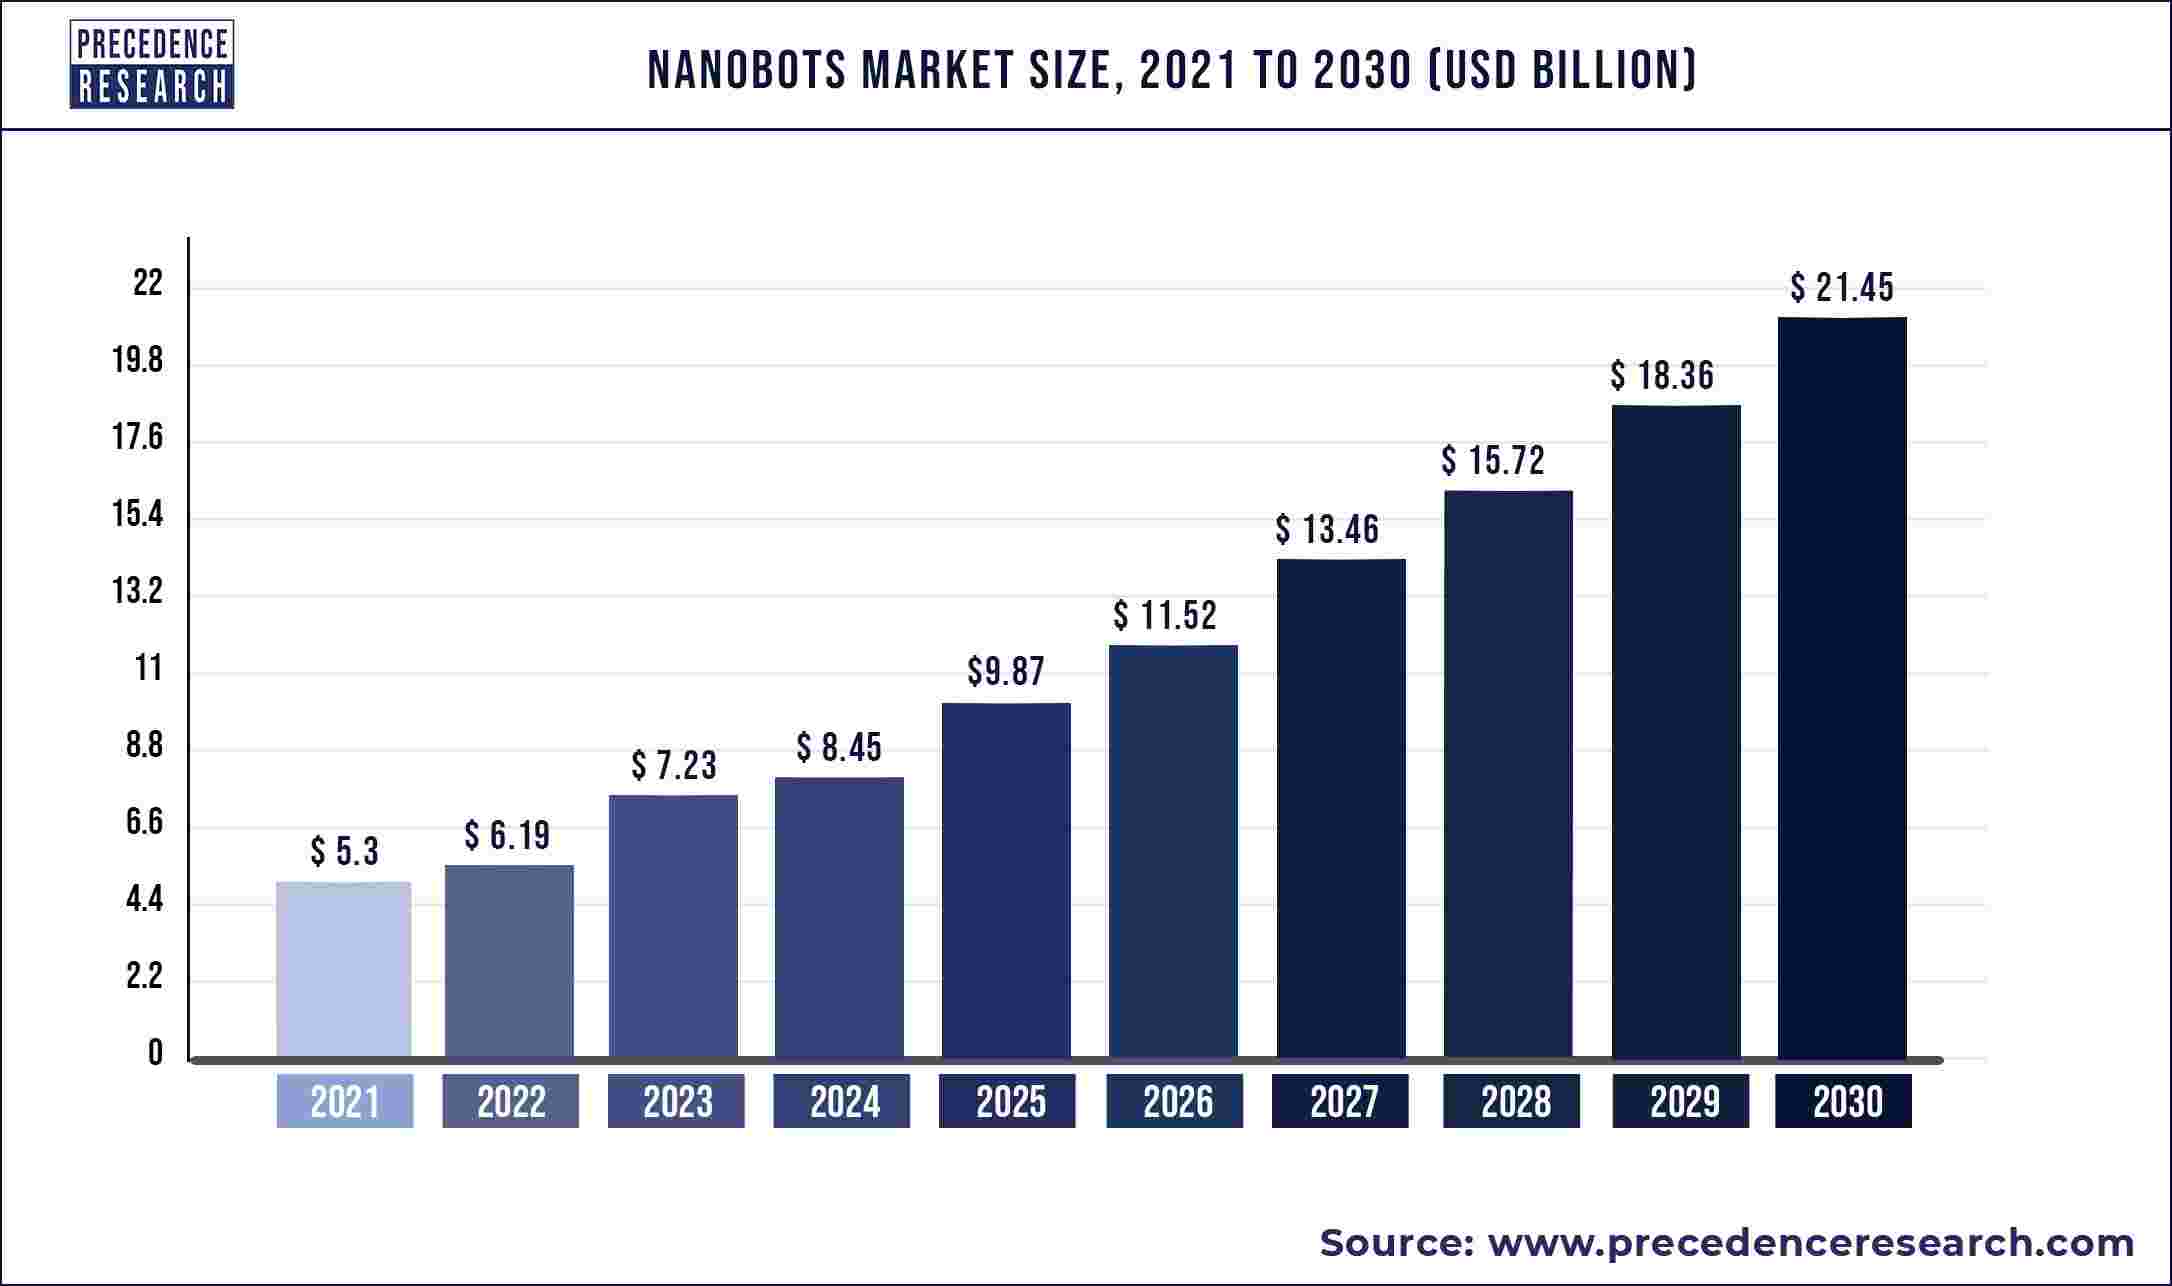 Nanobots Market